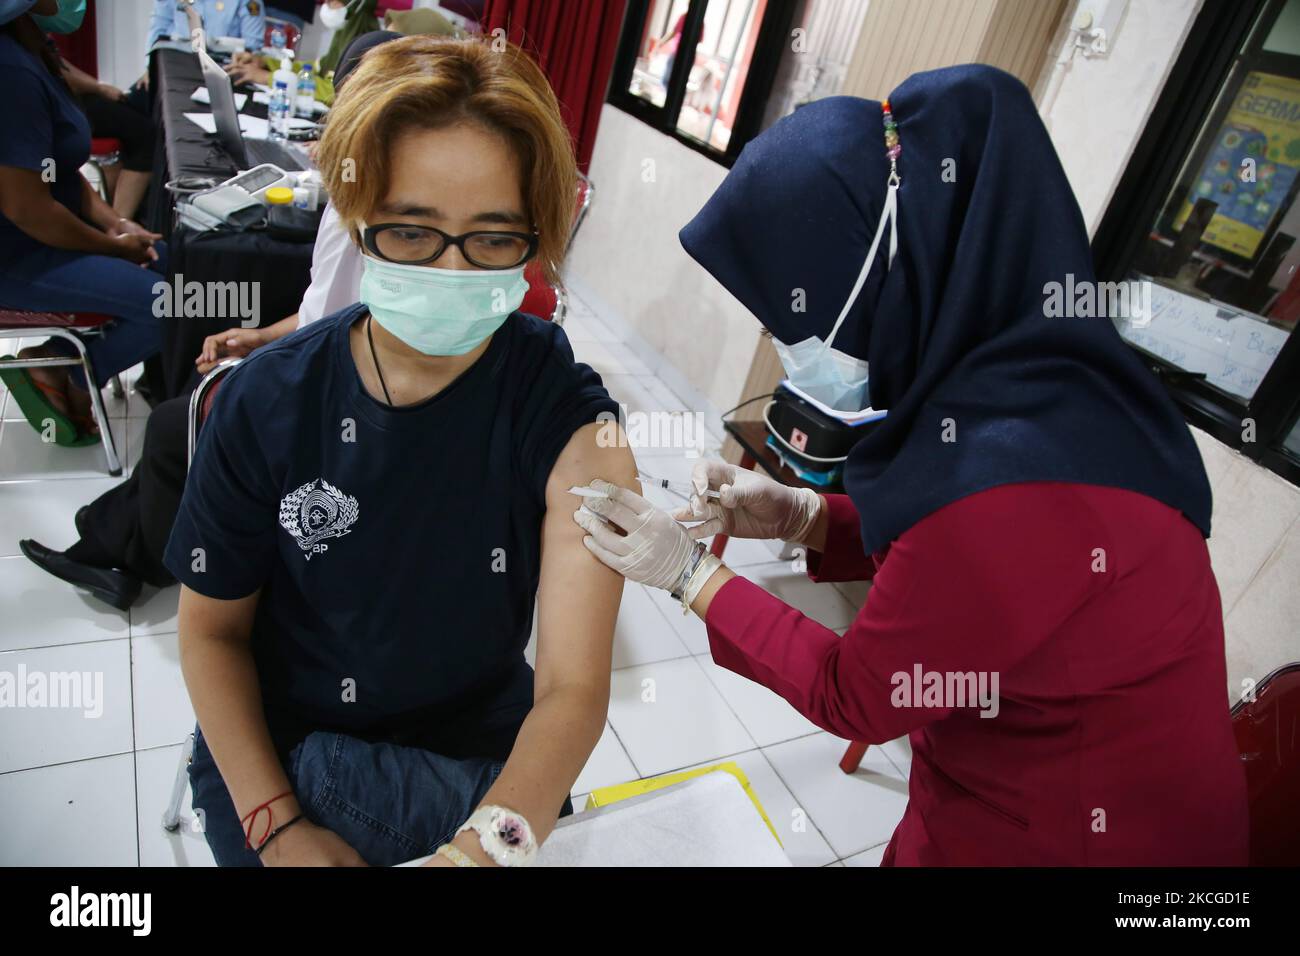 Les agents correctionnels et les détenus (WBP) du pénitencier de classe II-A (Lapas) Pondok Bambu, dans l'est de Jakarta, subissent une vaccination de masse pour Covid-19, le juin 23,2021. Type de vaccination de masse Sinovac pour les détenus et les agents de prison afin de garantir la distribution du programme de vaccination de masse COVID-19. Au total, 263 personnes, soit 32 agents pénitentiaires et 231 résidents assistés, ont été vaccinées contre la COVID-19 pour créer une immunité auditive au milieu de la pandémie COVID-19, qui n'est pas encore terminée. (Photo de Dasril Roszandi/NurPhoto) Banque D'Images